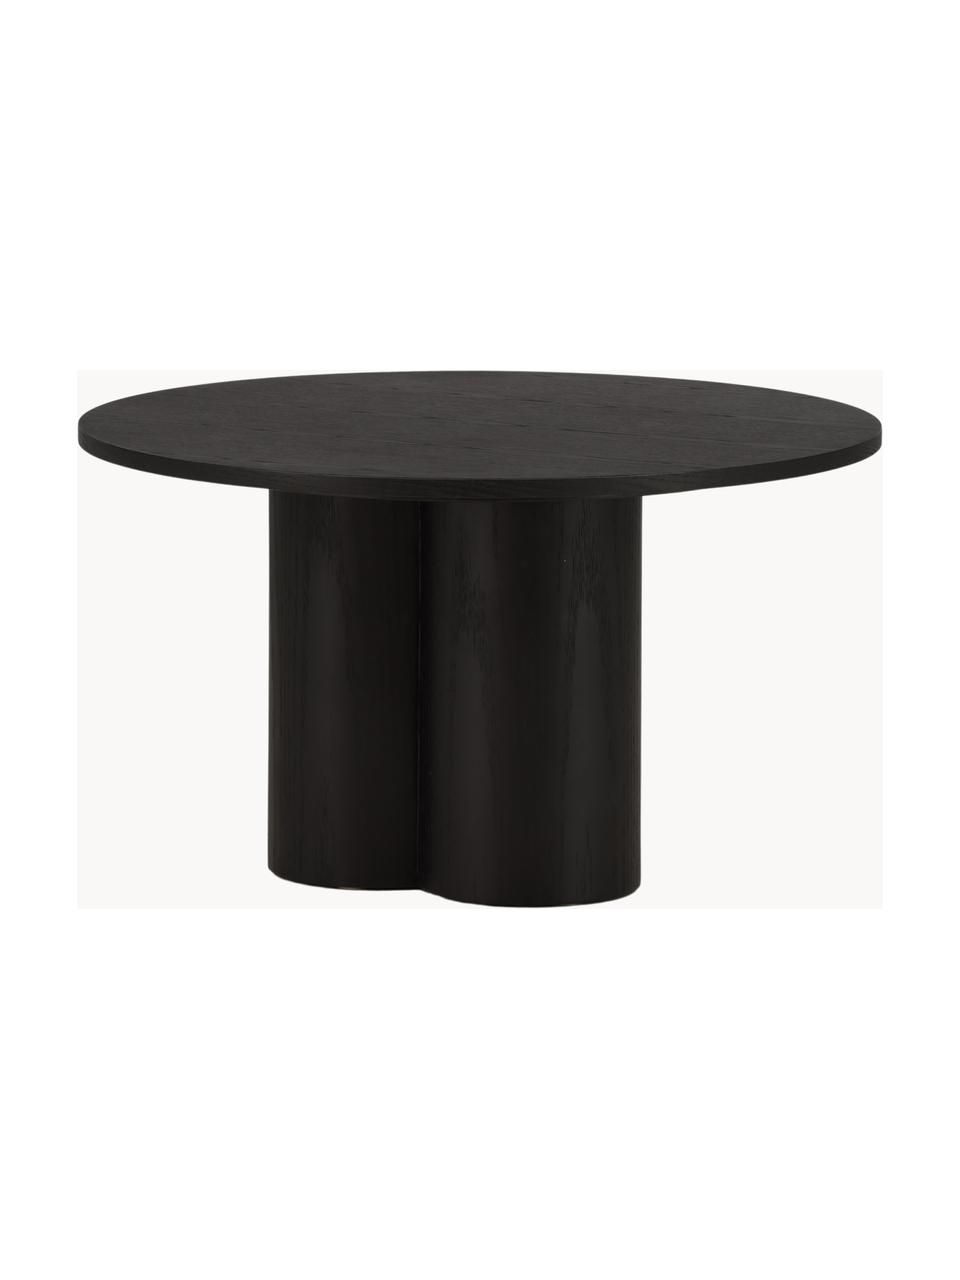 Okrúhly drevený konferenčný stolík Olivia, Drevovláknitá doska strednej hustoty (MDF), Drevo, čierna lakované, Ø 80 cm